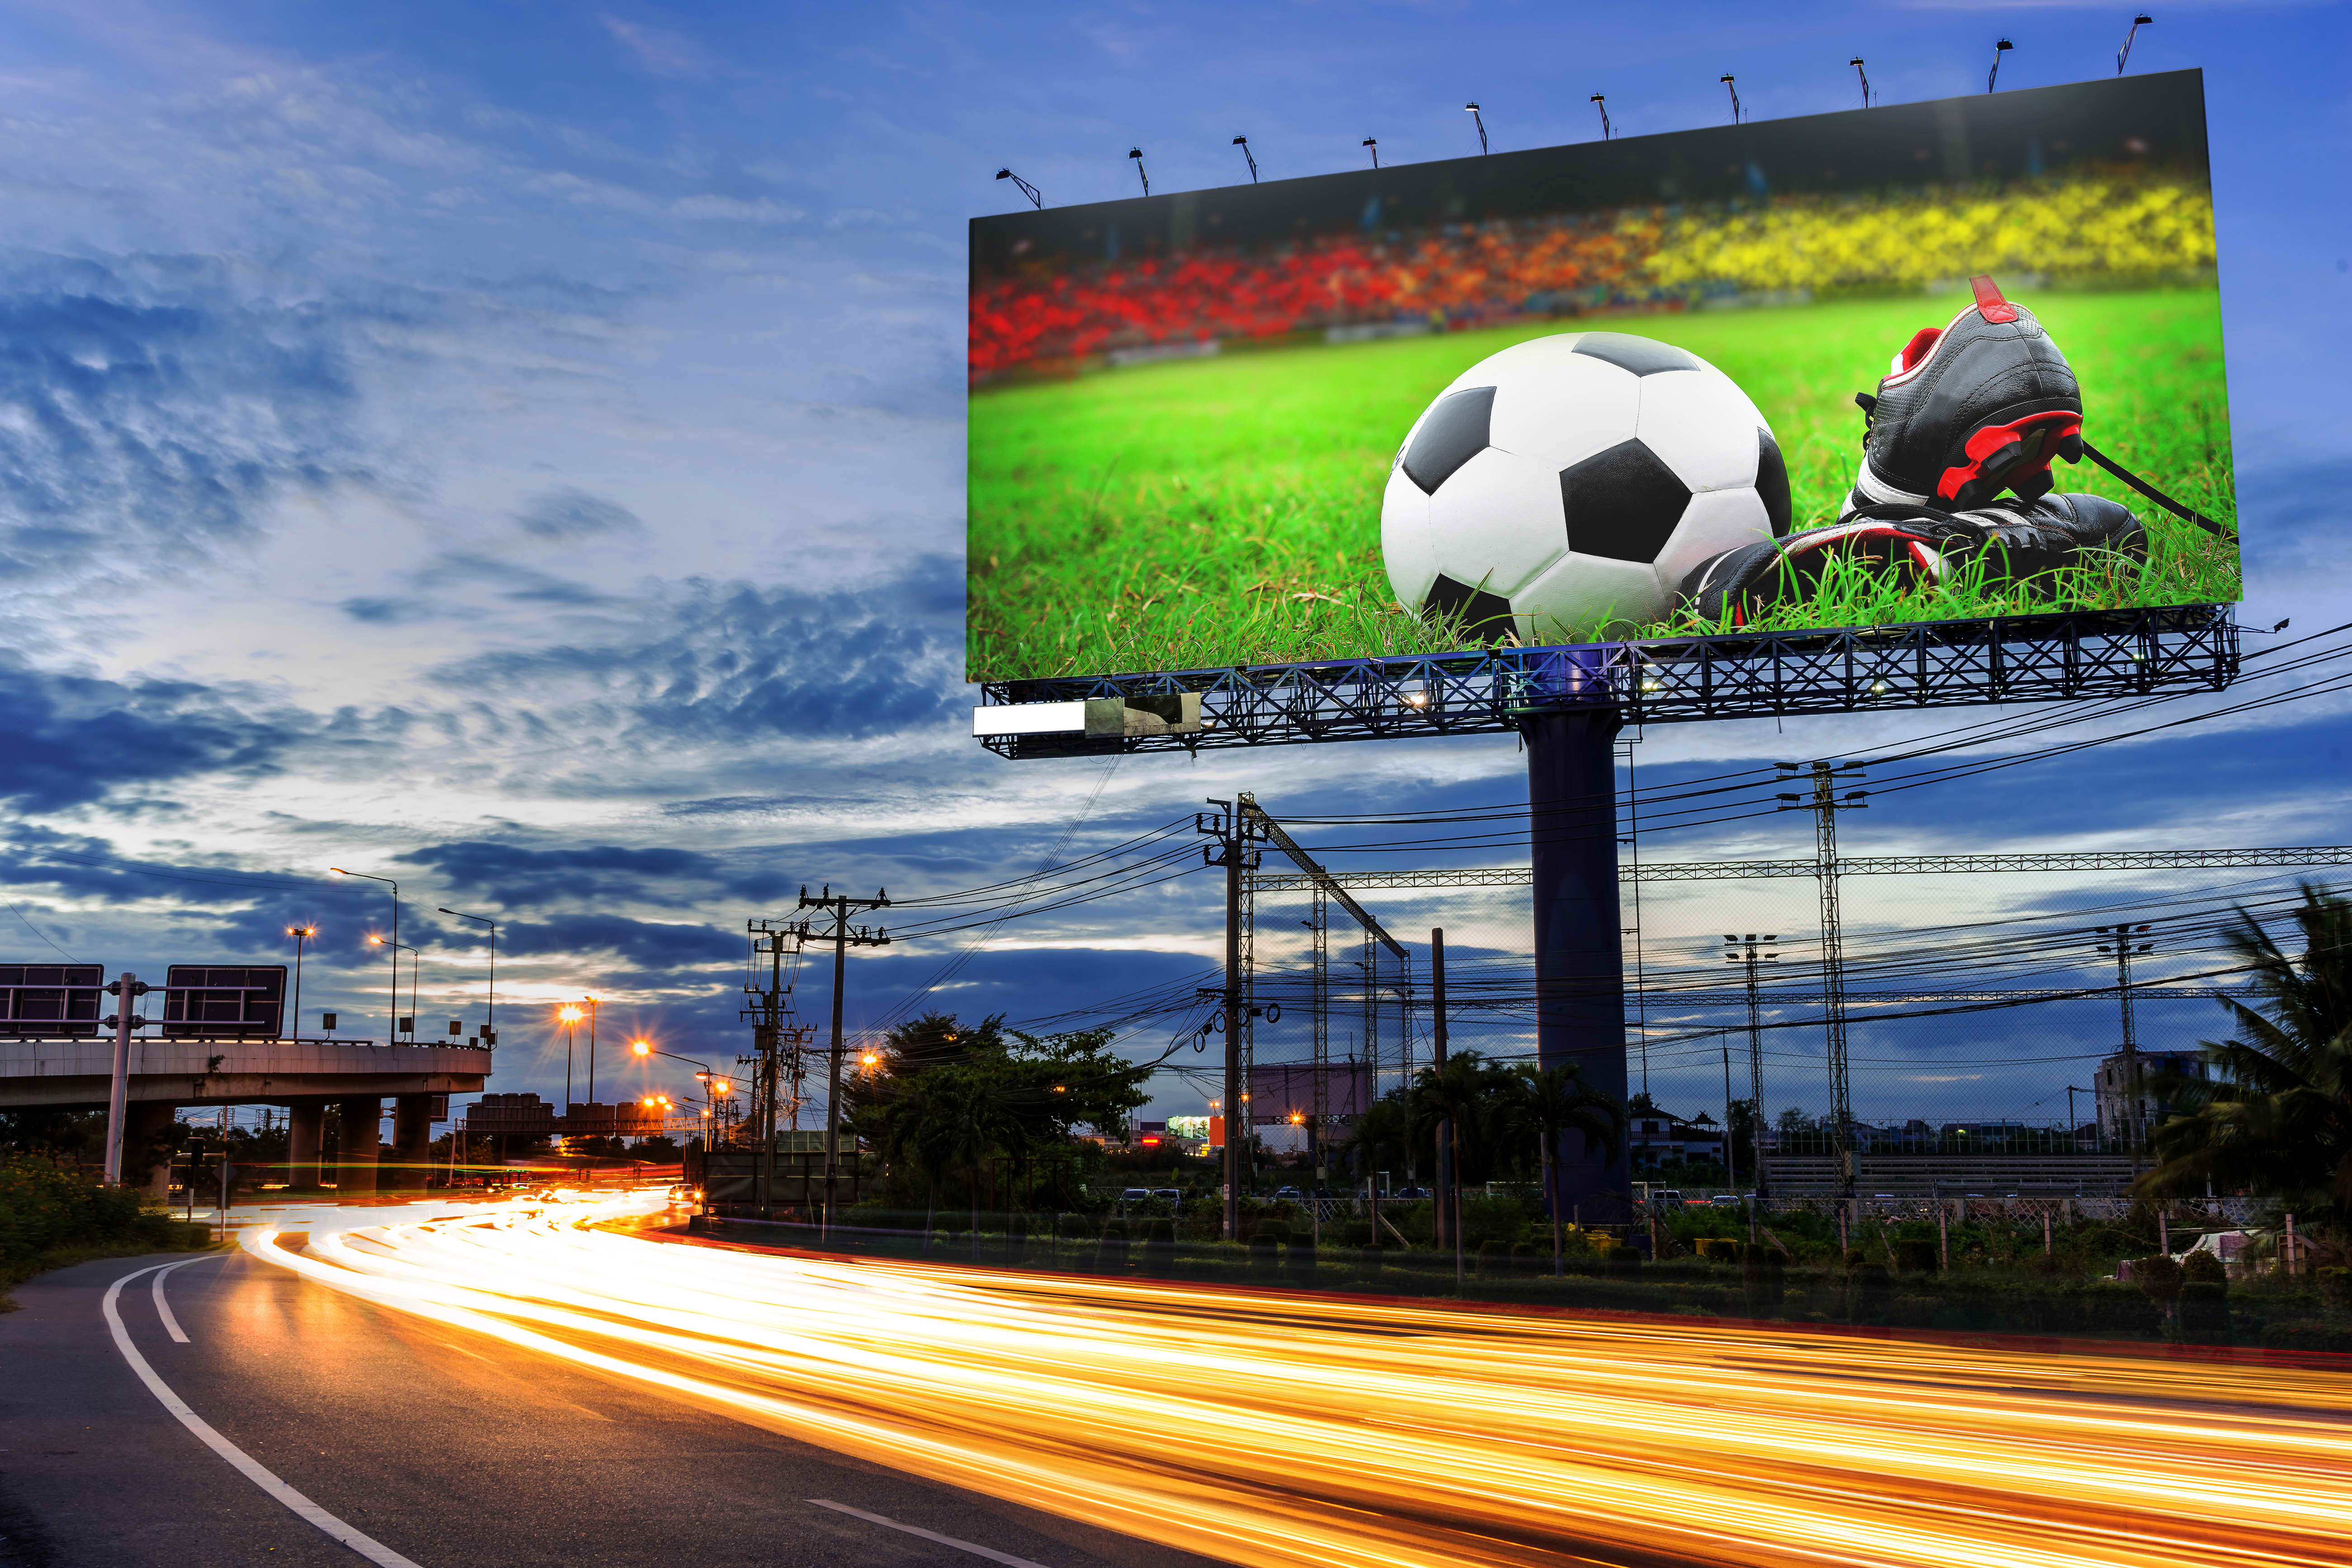 Реклама на стадионе. Уличные рекламные щиты. Рекламные щиты на футбольном стадионе. Рекламные баннеры на стадионе. Светодиодный экран на стадионе.